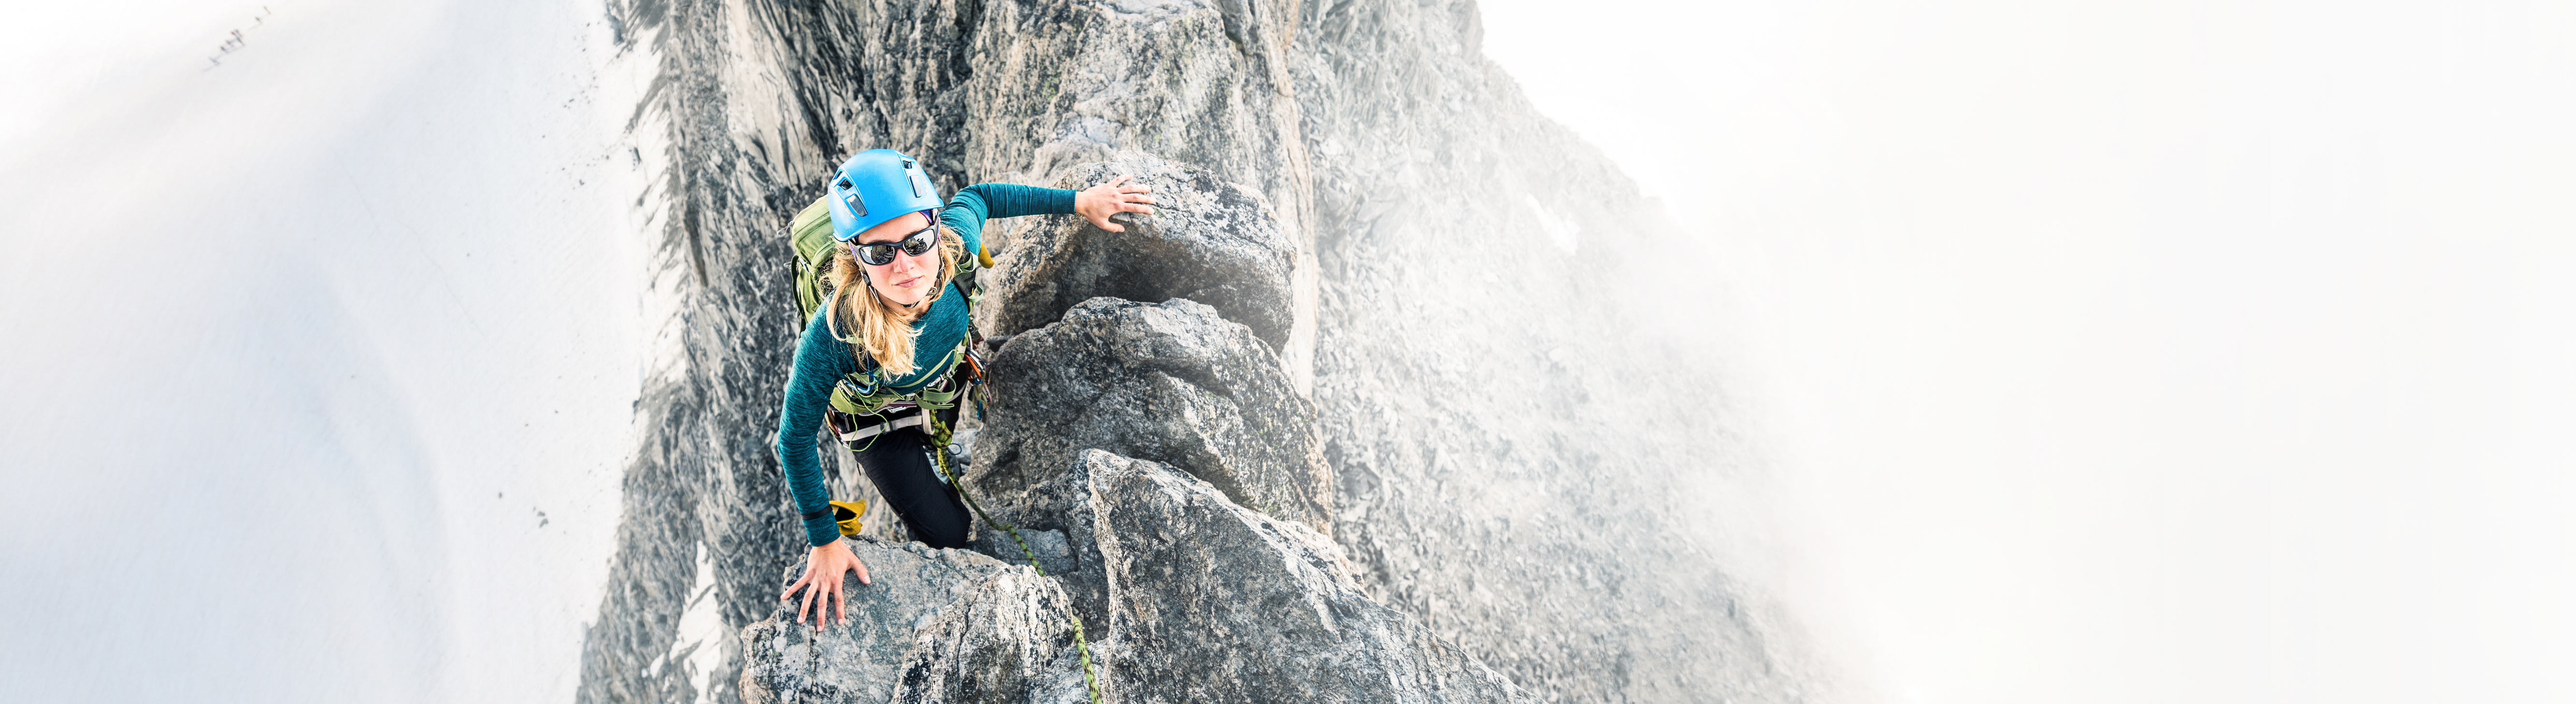 Eine Frau mit Kletterausrüstung schaut von einem steilen Felsgipfel hoch: LTS fördert die Stärken jedes Einzelnen.